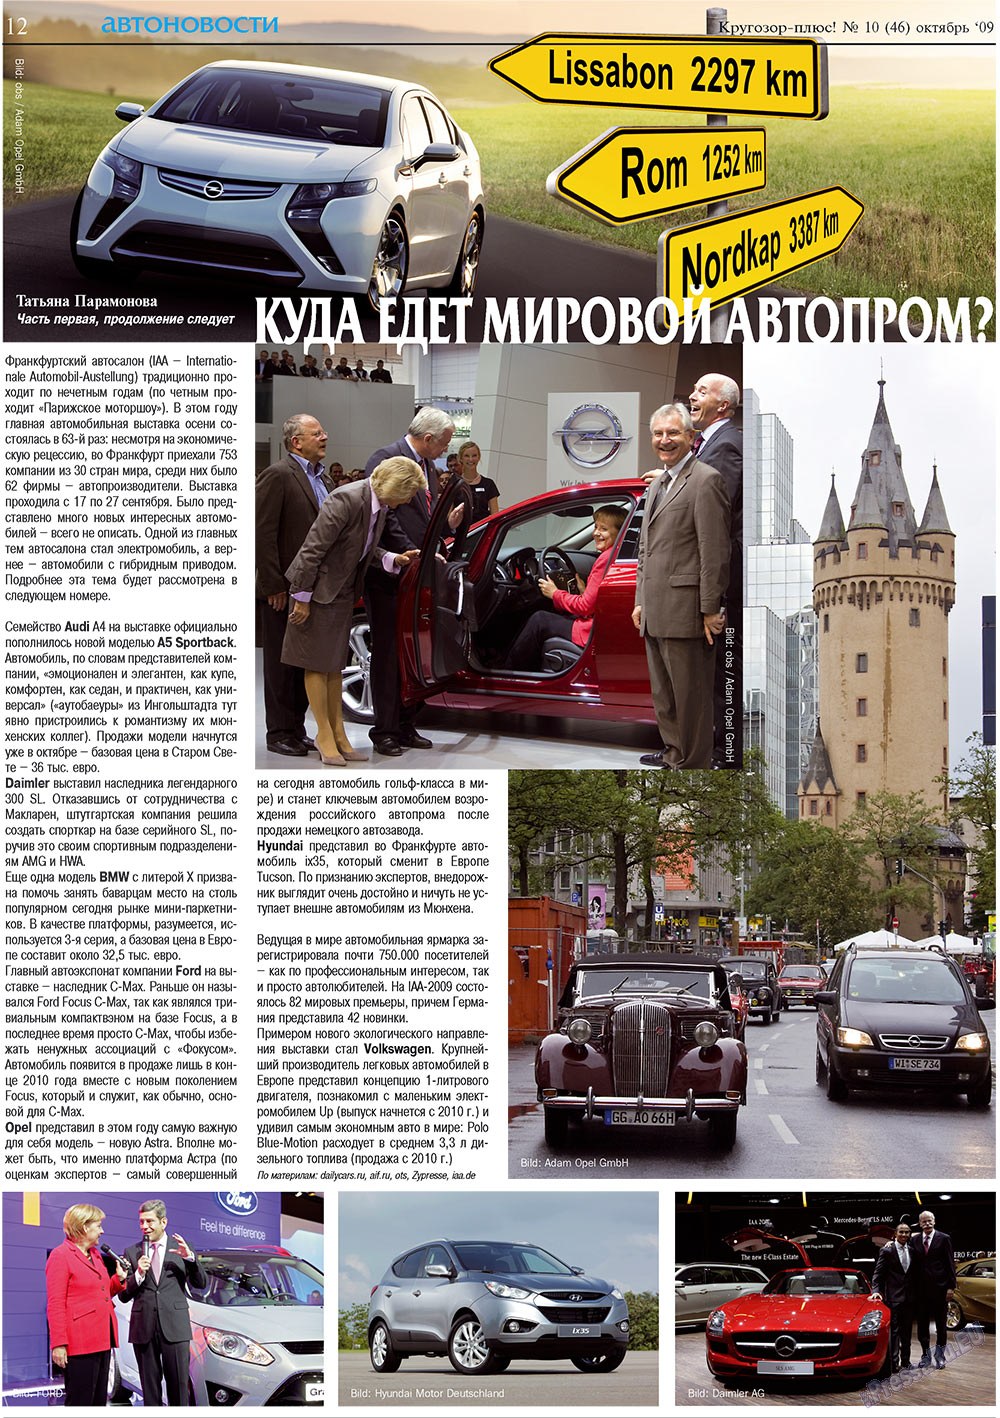 Кругозор плюс!, газета. 2009 №10 стр.12